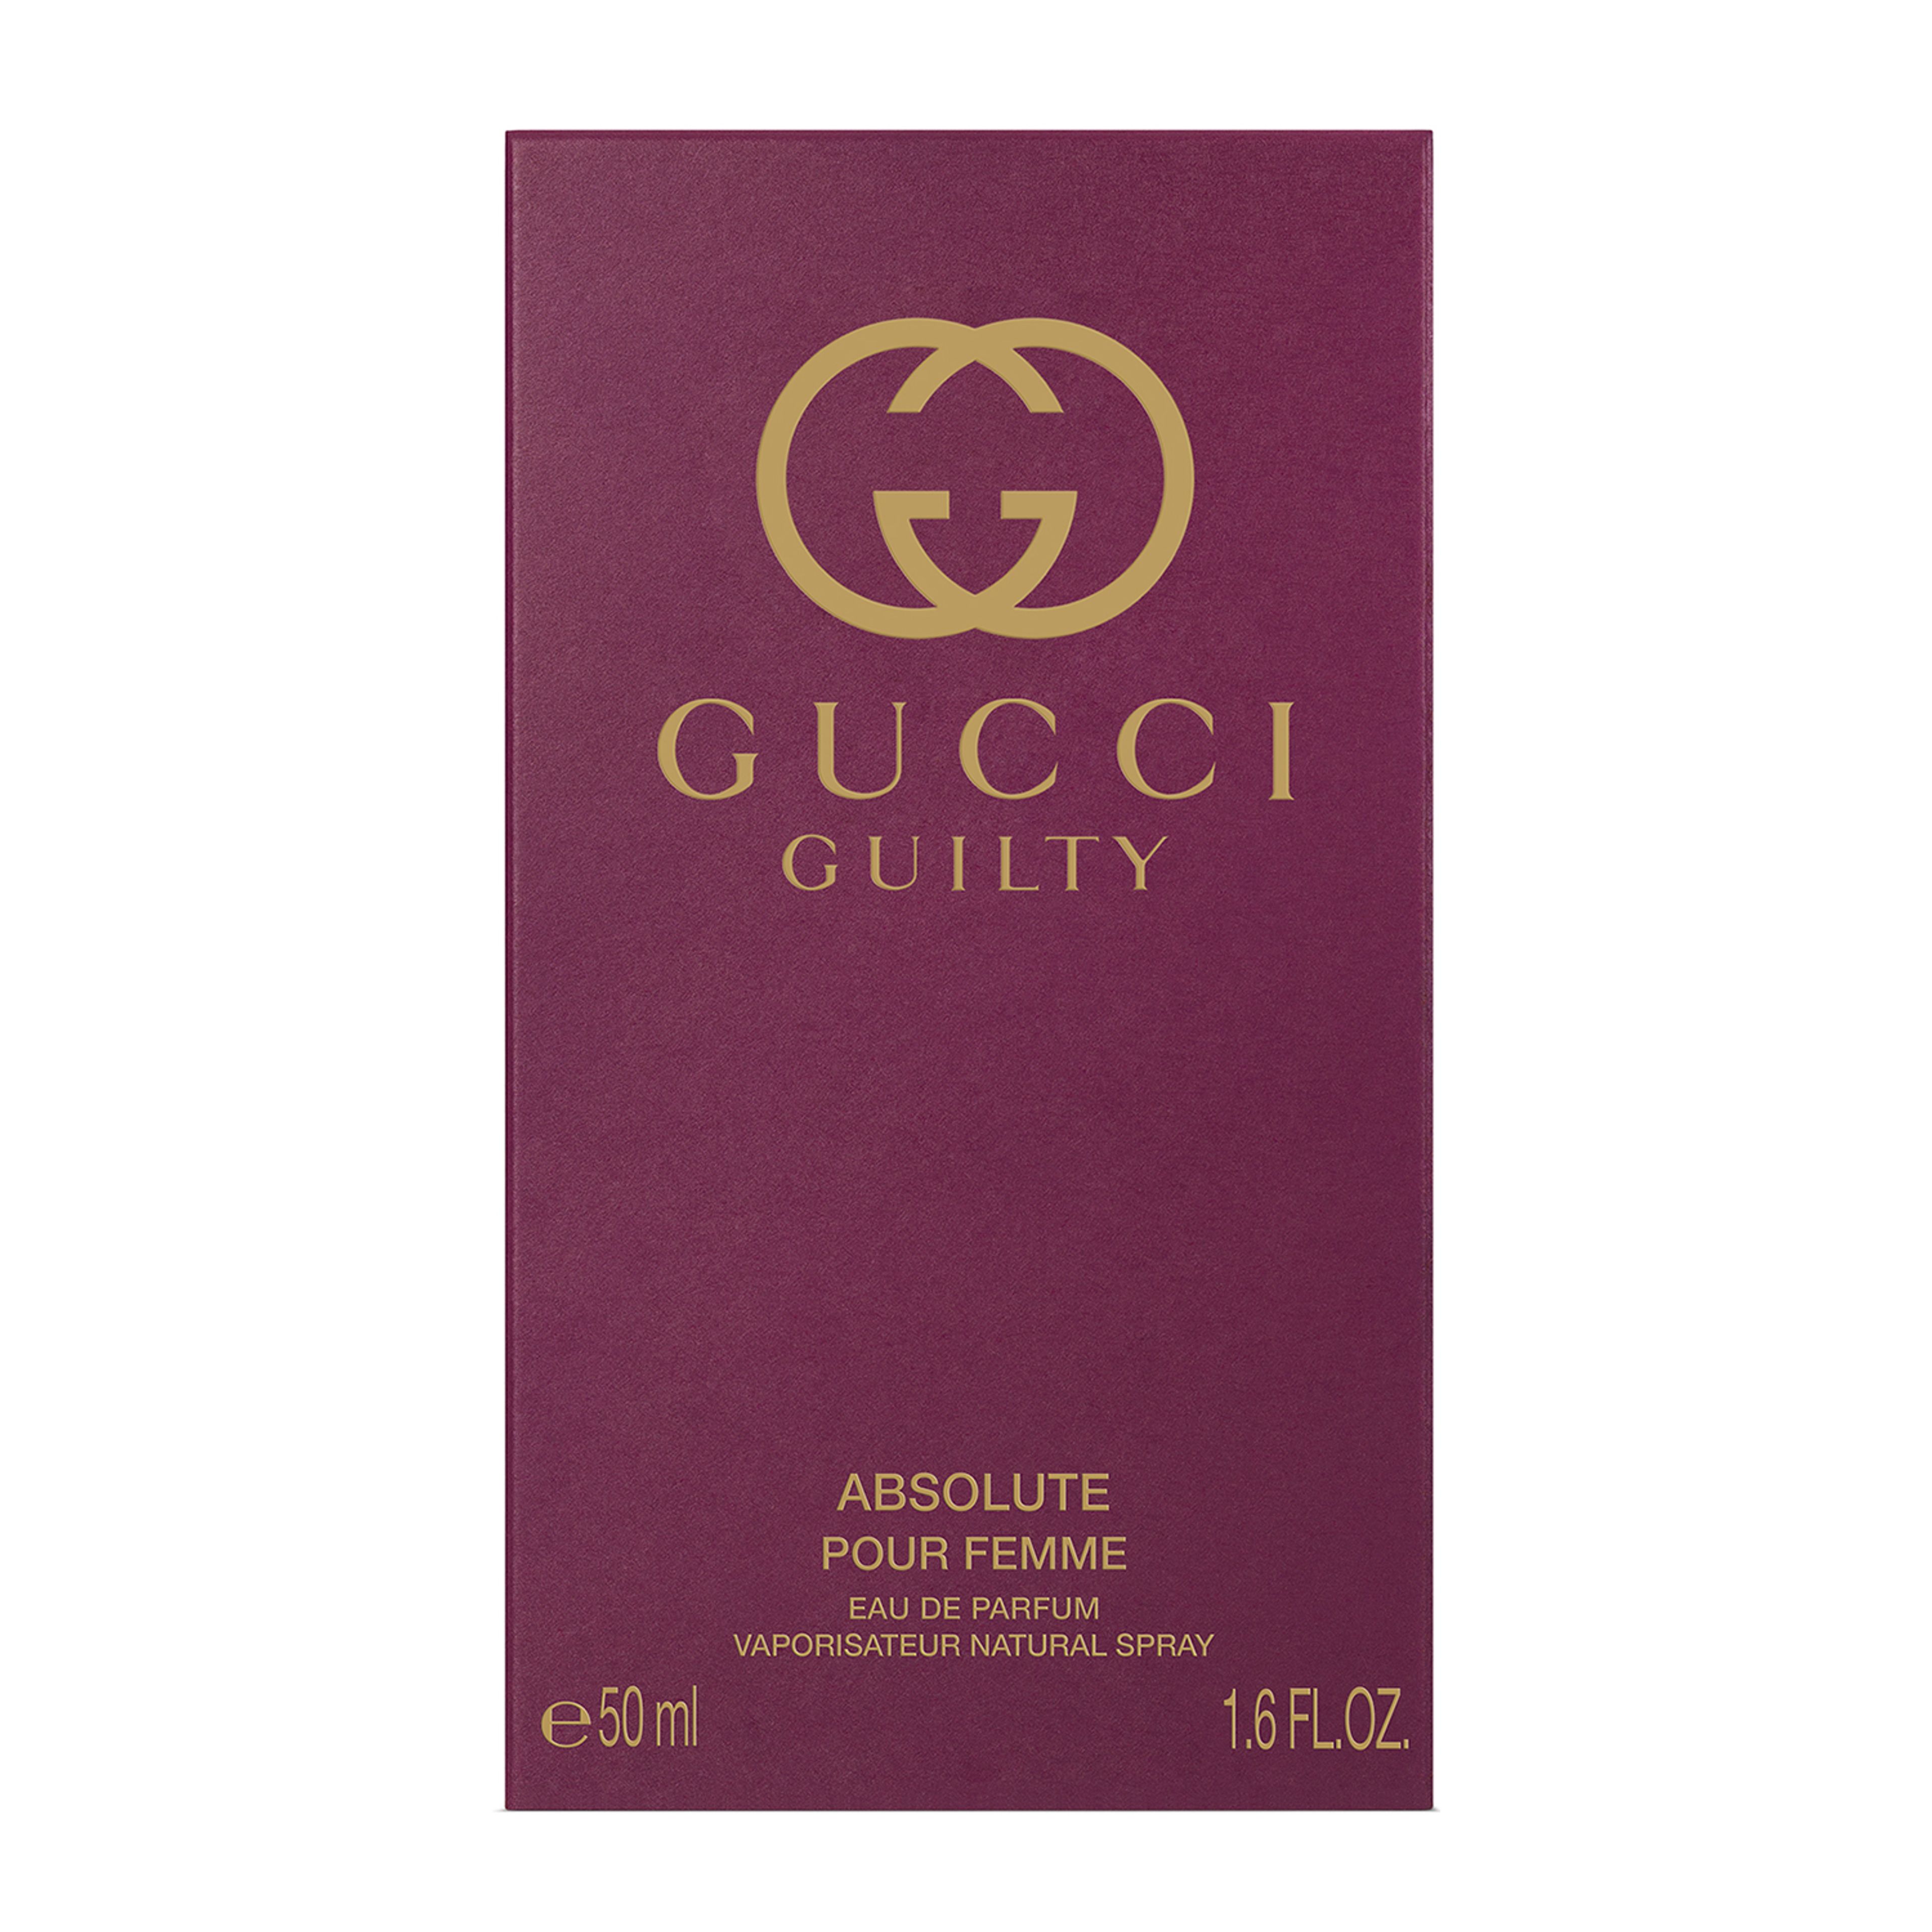 Gucci Gucci Guilty Absolute Pour Femme Eau De Parfum 3